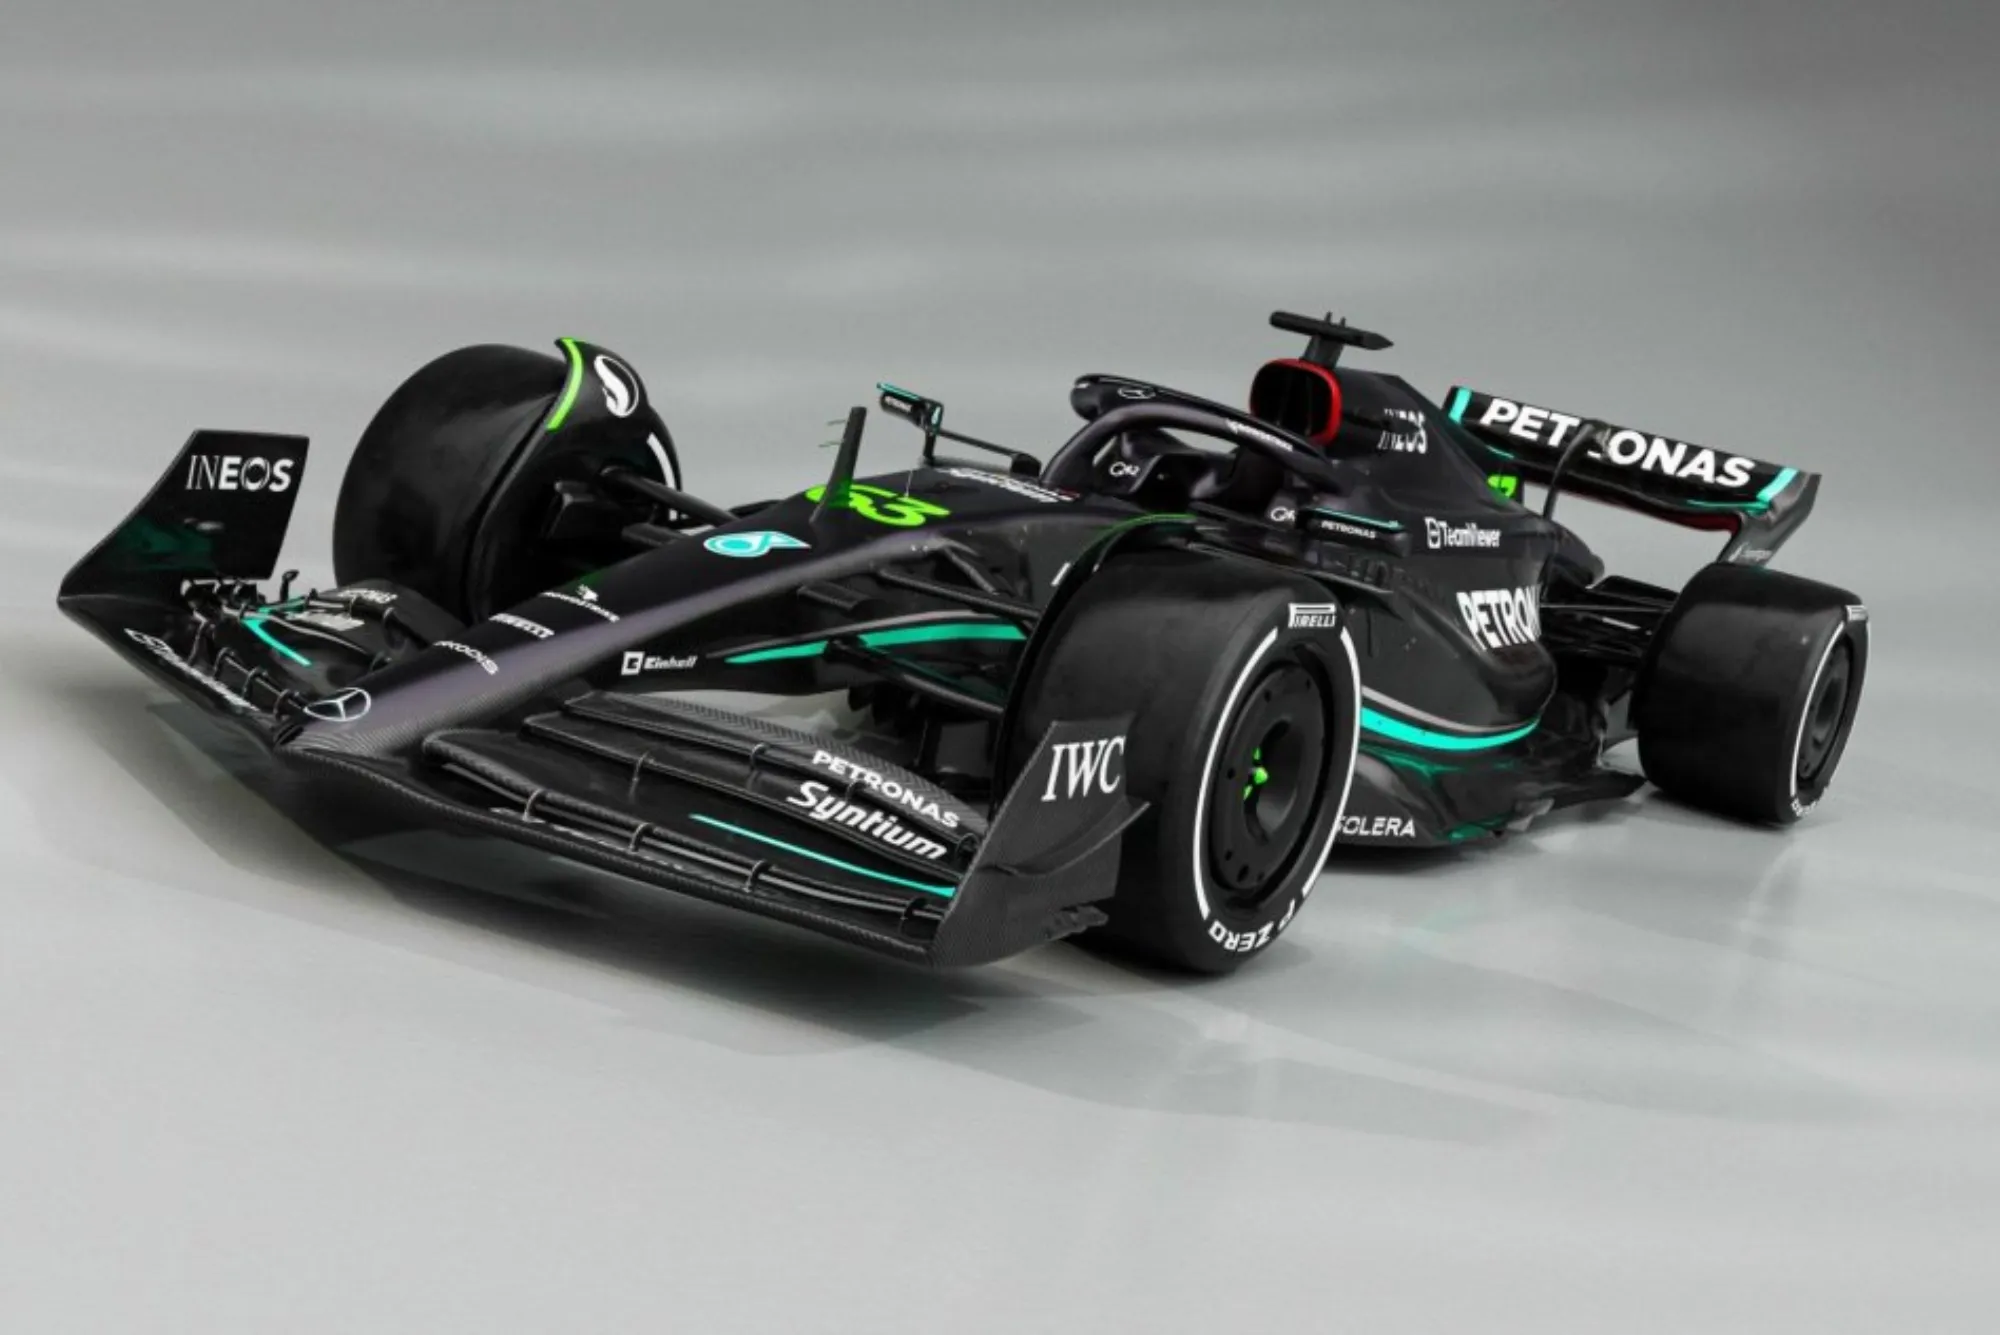 The Mercedes Formula 1 Car